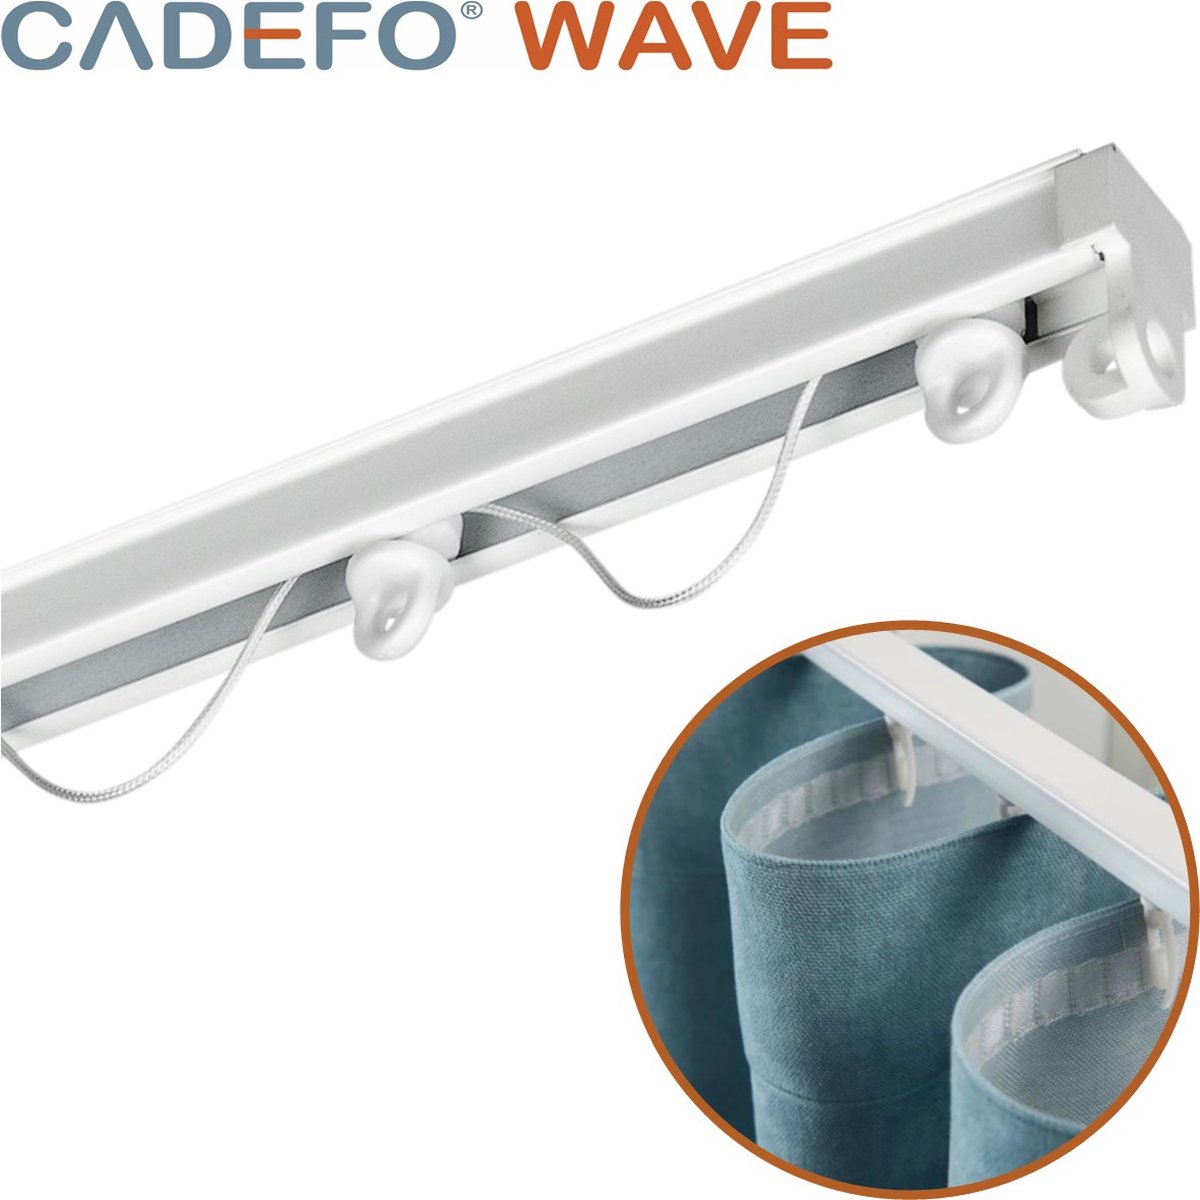 CADEFO WAVE (451 - 500 cm) Gordijnrails - Compleet op maat! - UIT 1 STUK - Leverbaar tot 6 meter - Plafondbevestiging - Lengte 493 cm